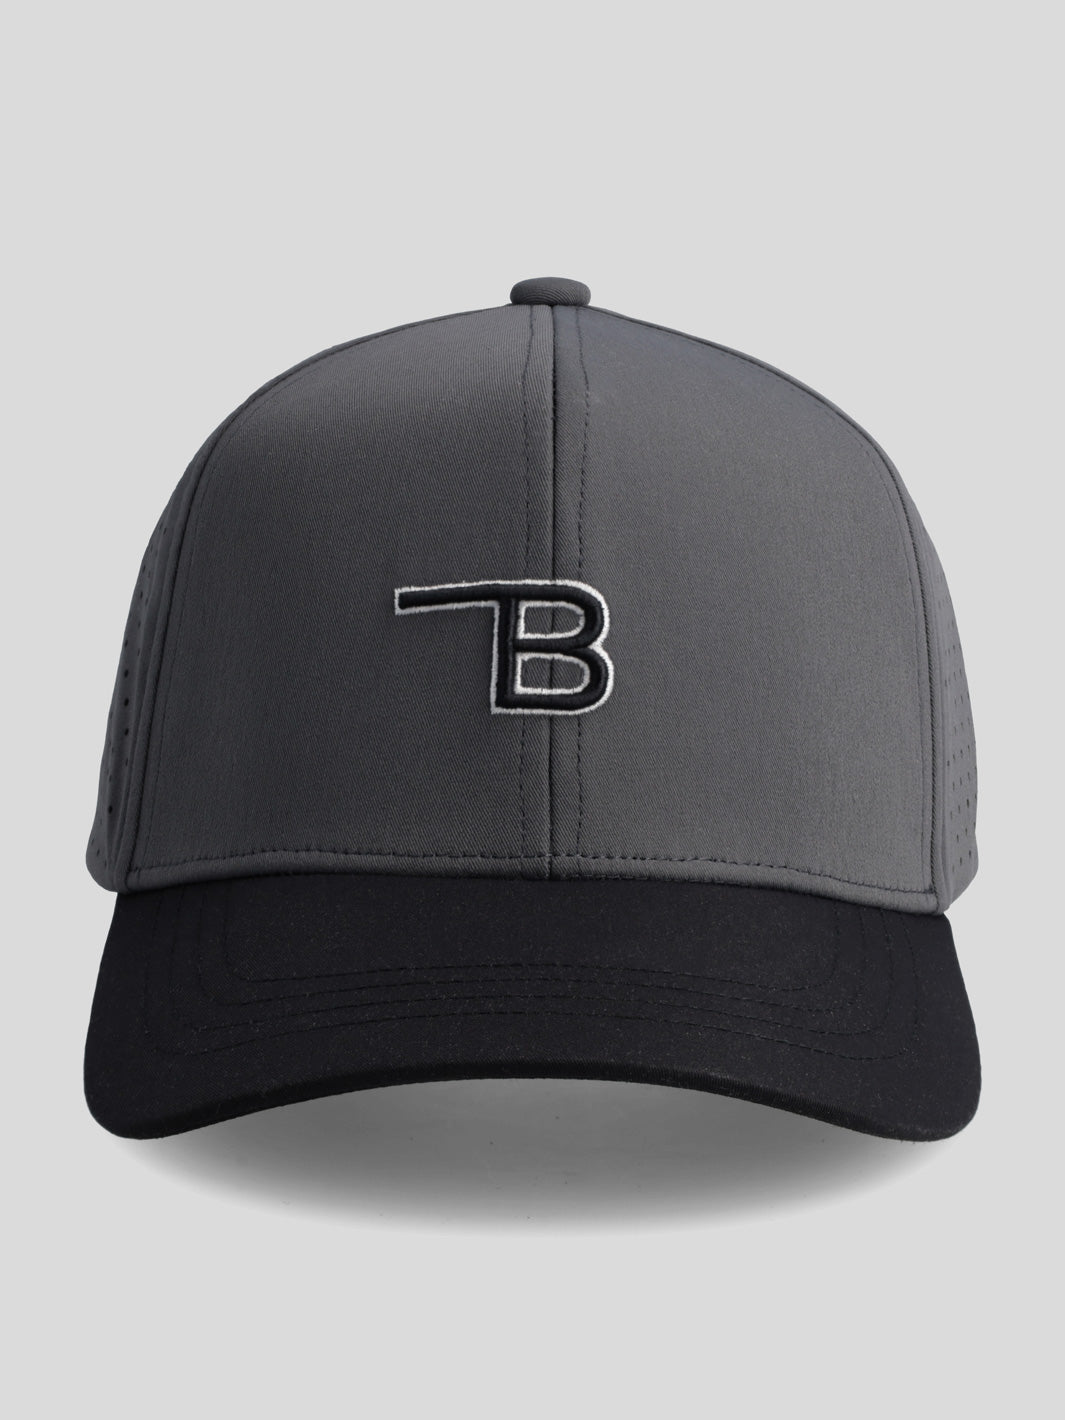 Golf Cap - Black/Charcoal